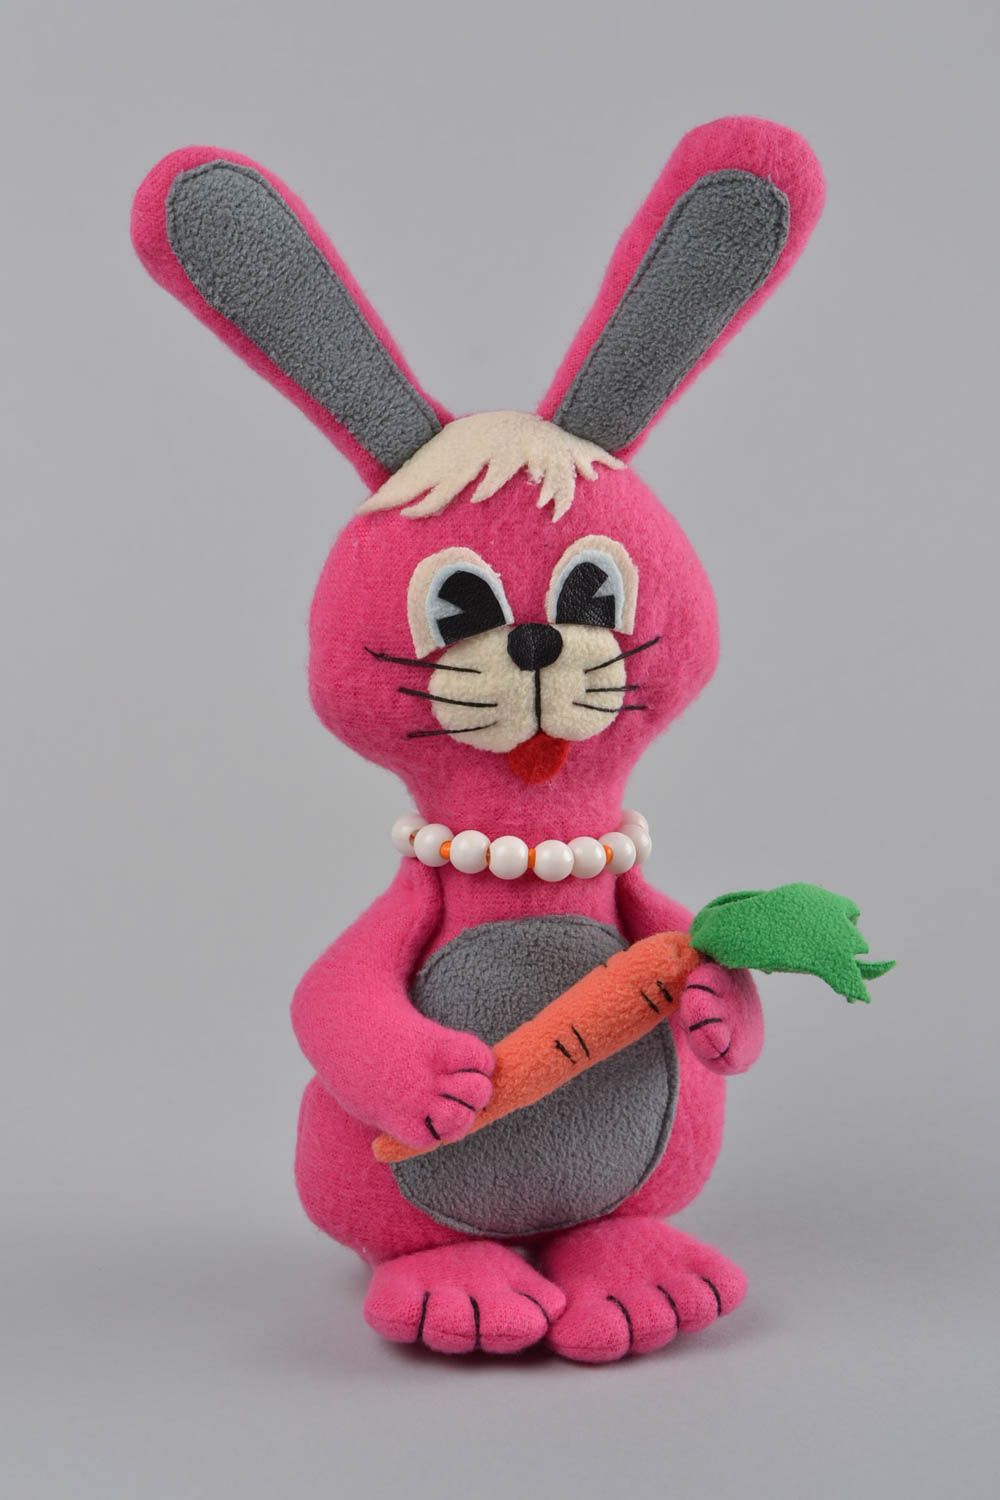 Rosa handmade Kuscheltier Hase aus Fleece für Kinder originell schön Geschenk foto 1